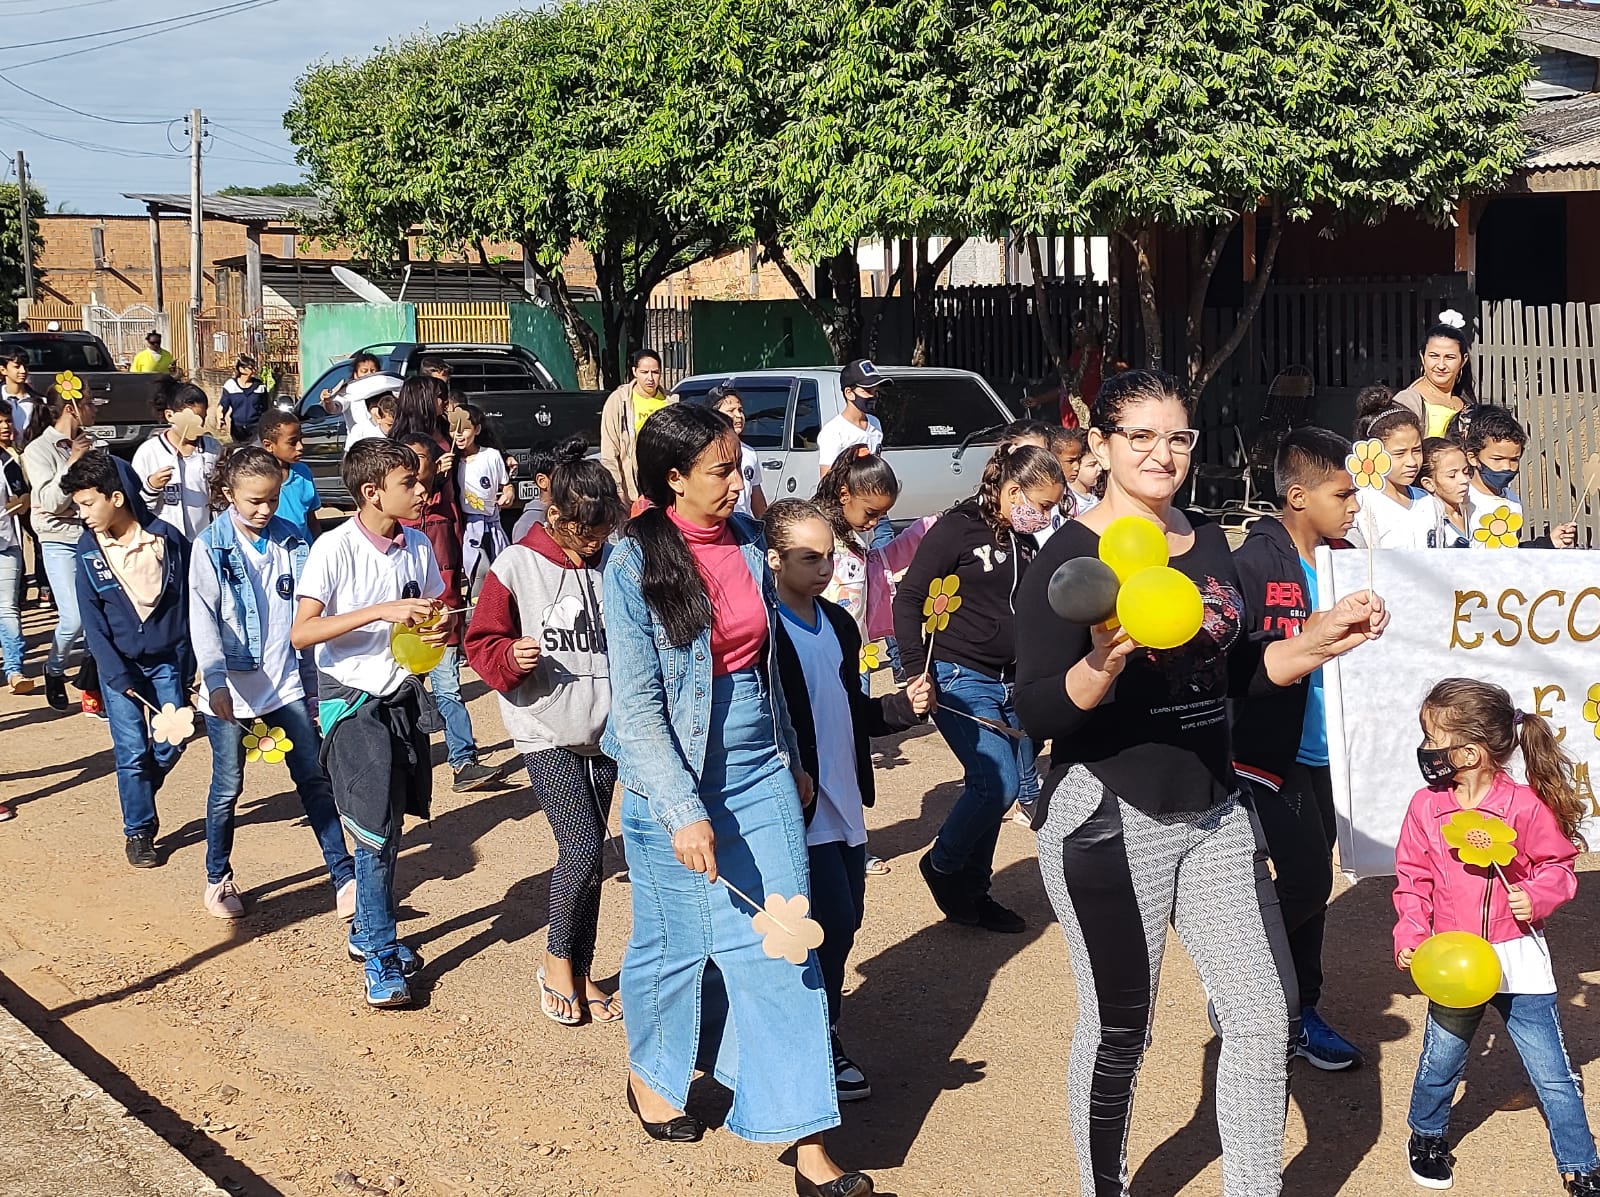 Secretaria de Assistência Social e CRAS,com o apoio da Prefeitura de Rio Crespo, promove caminhada em prol da campanha “FAÇA BONITO” no combate à exploração sexual de crianças e adolescentes